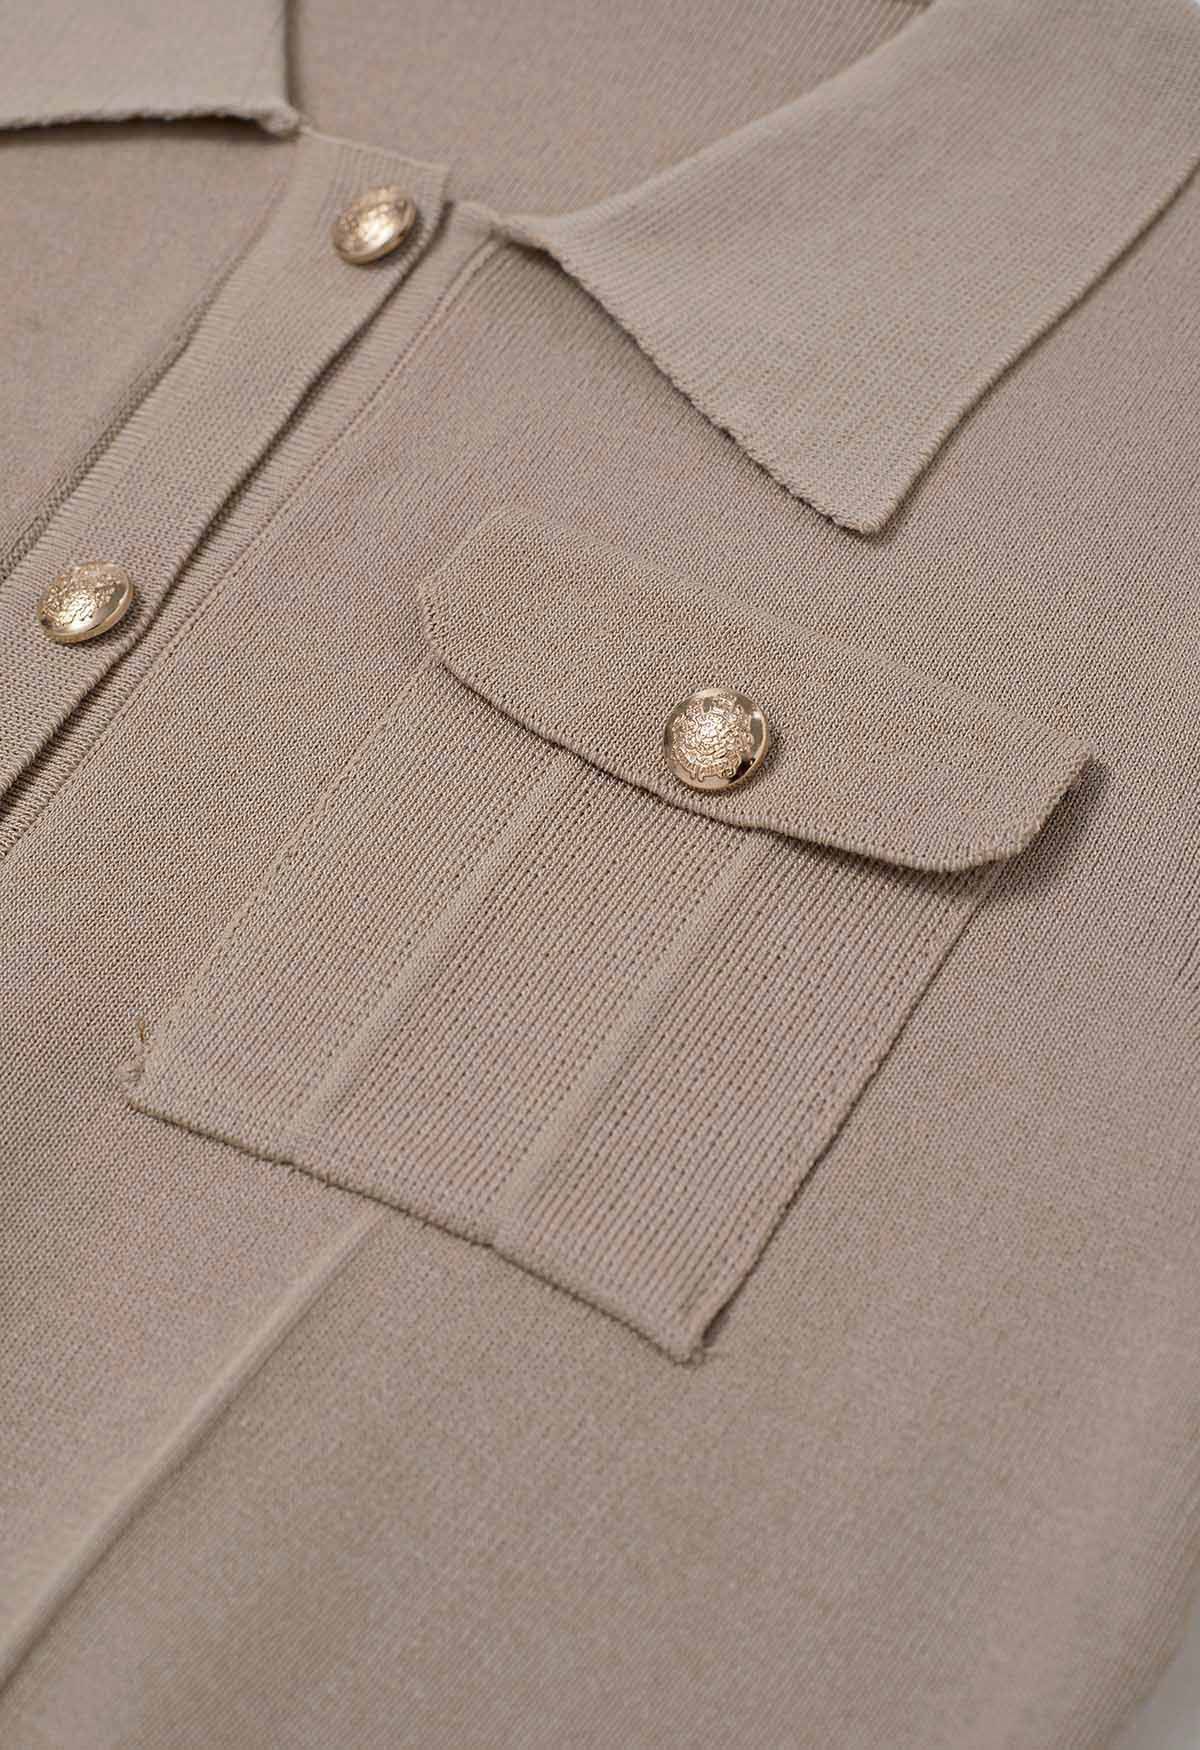 Conjunto de falda midi y top de punto de manga corta con botones destacados en color topo